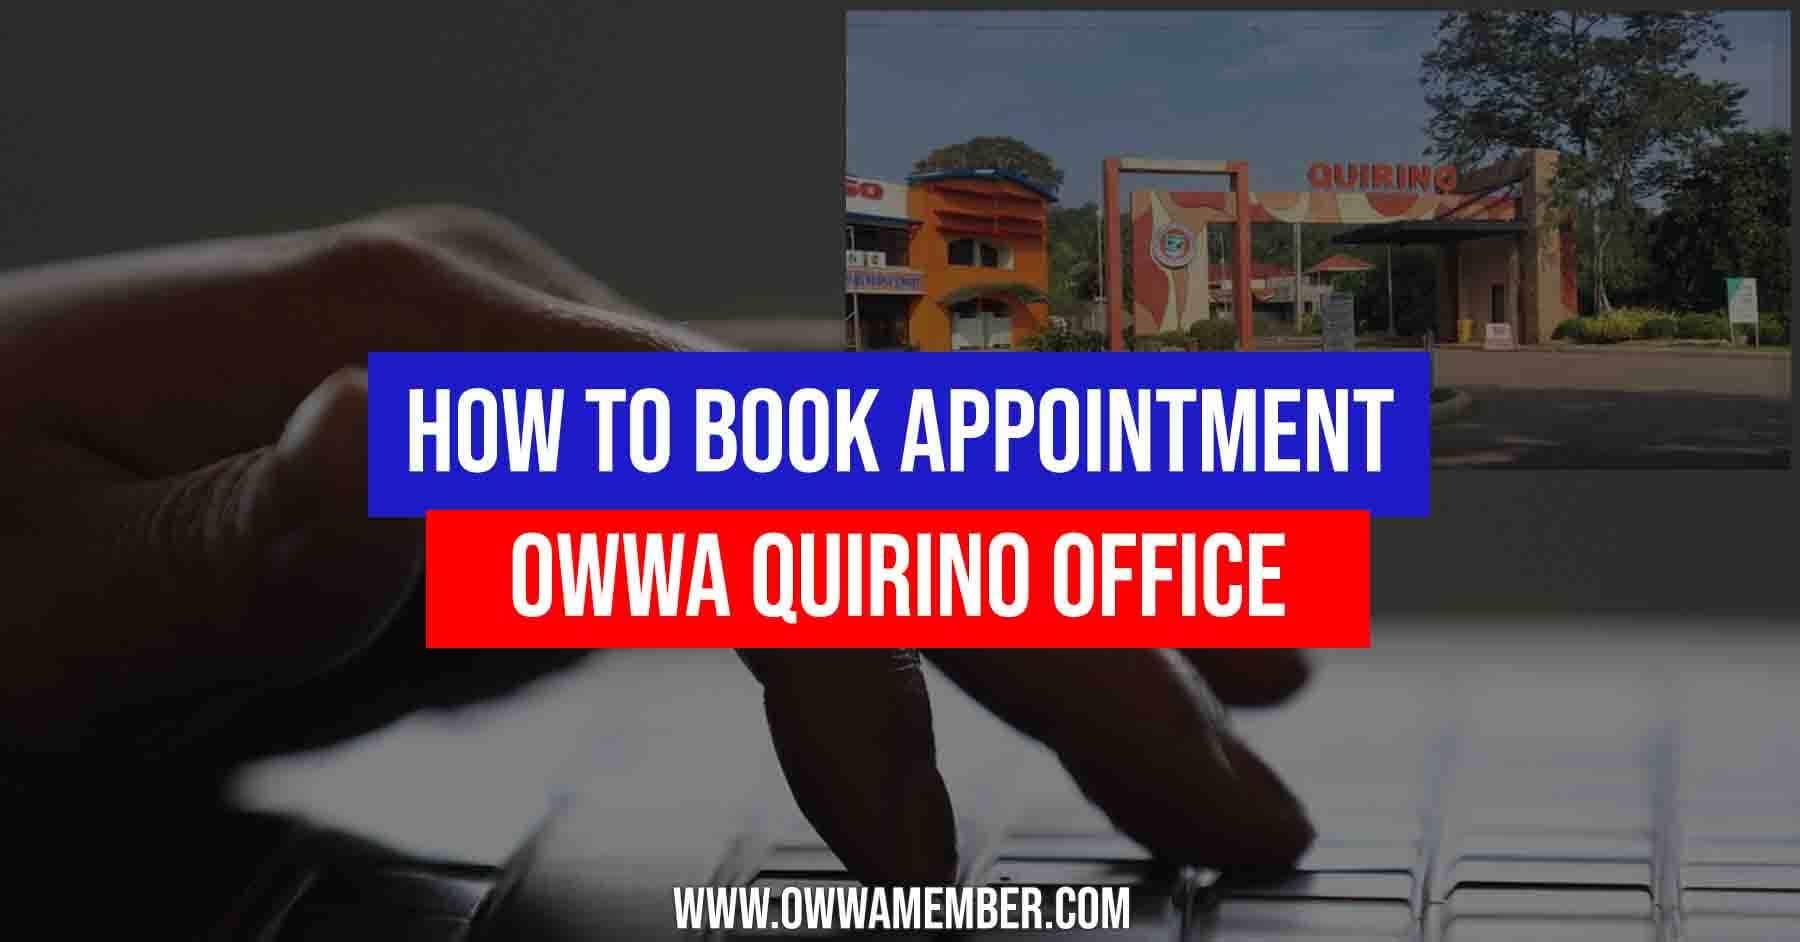 owwa quirino office membership